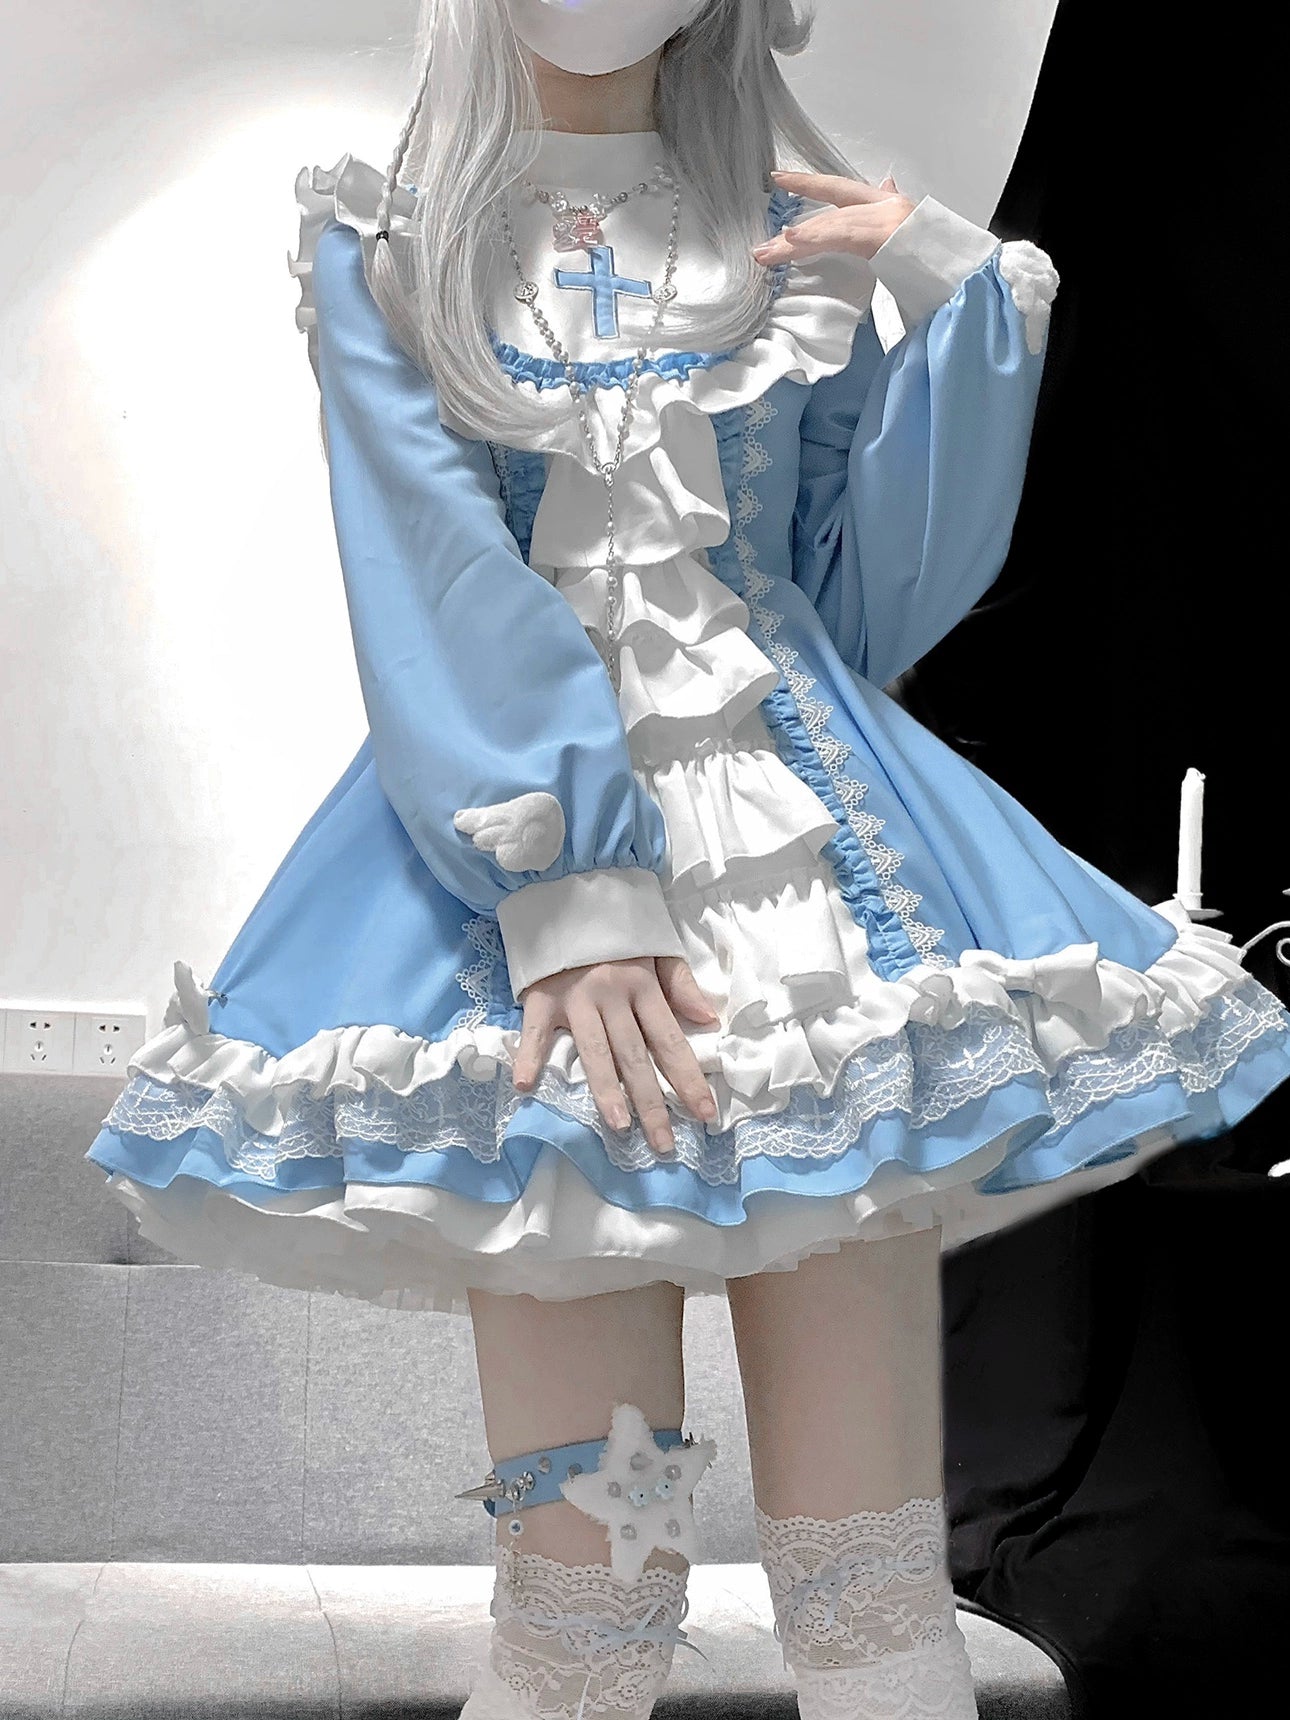 Medical Nun Lolita Dress Subculture Cross Prayer Blue Dress (L M S XL XXL) 37466:561292